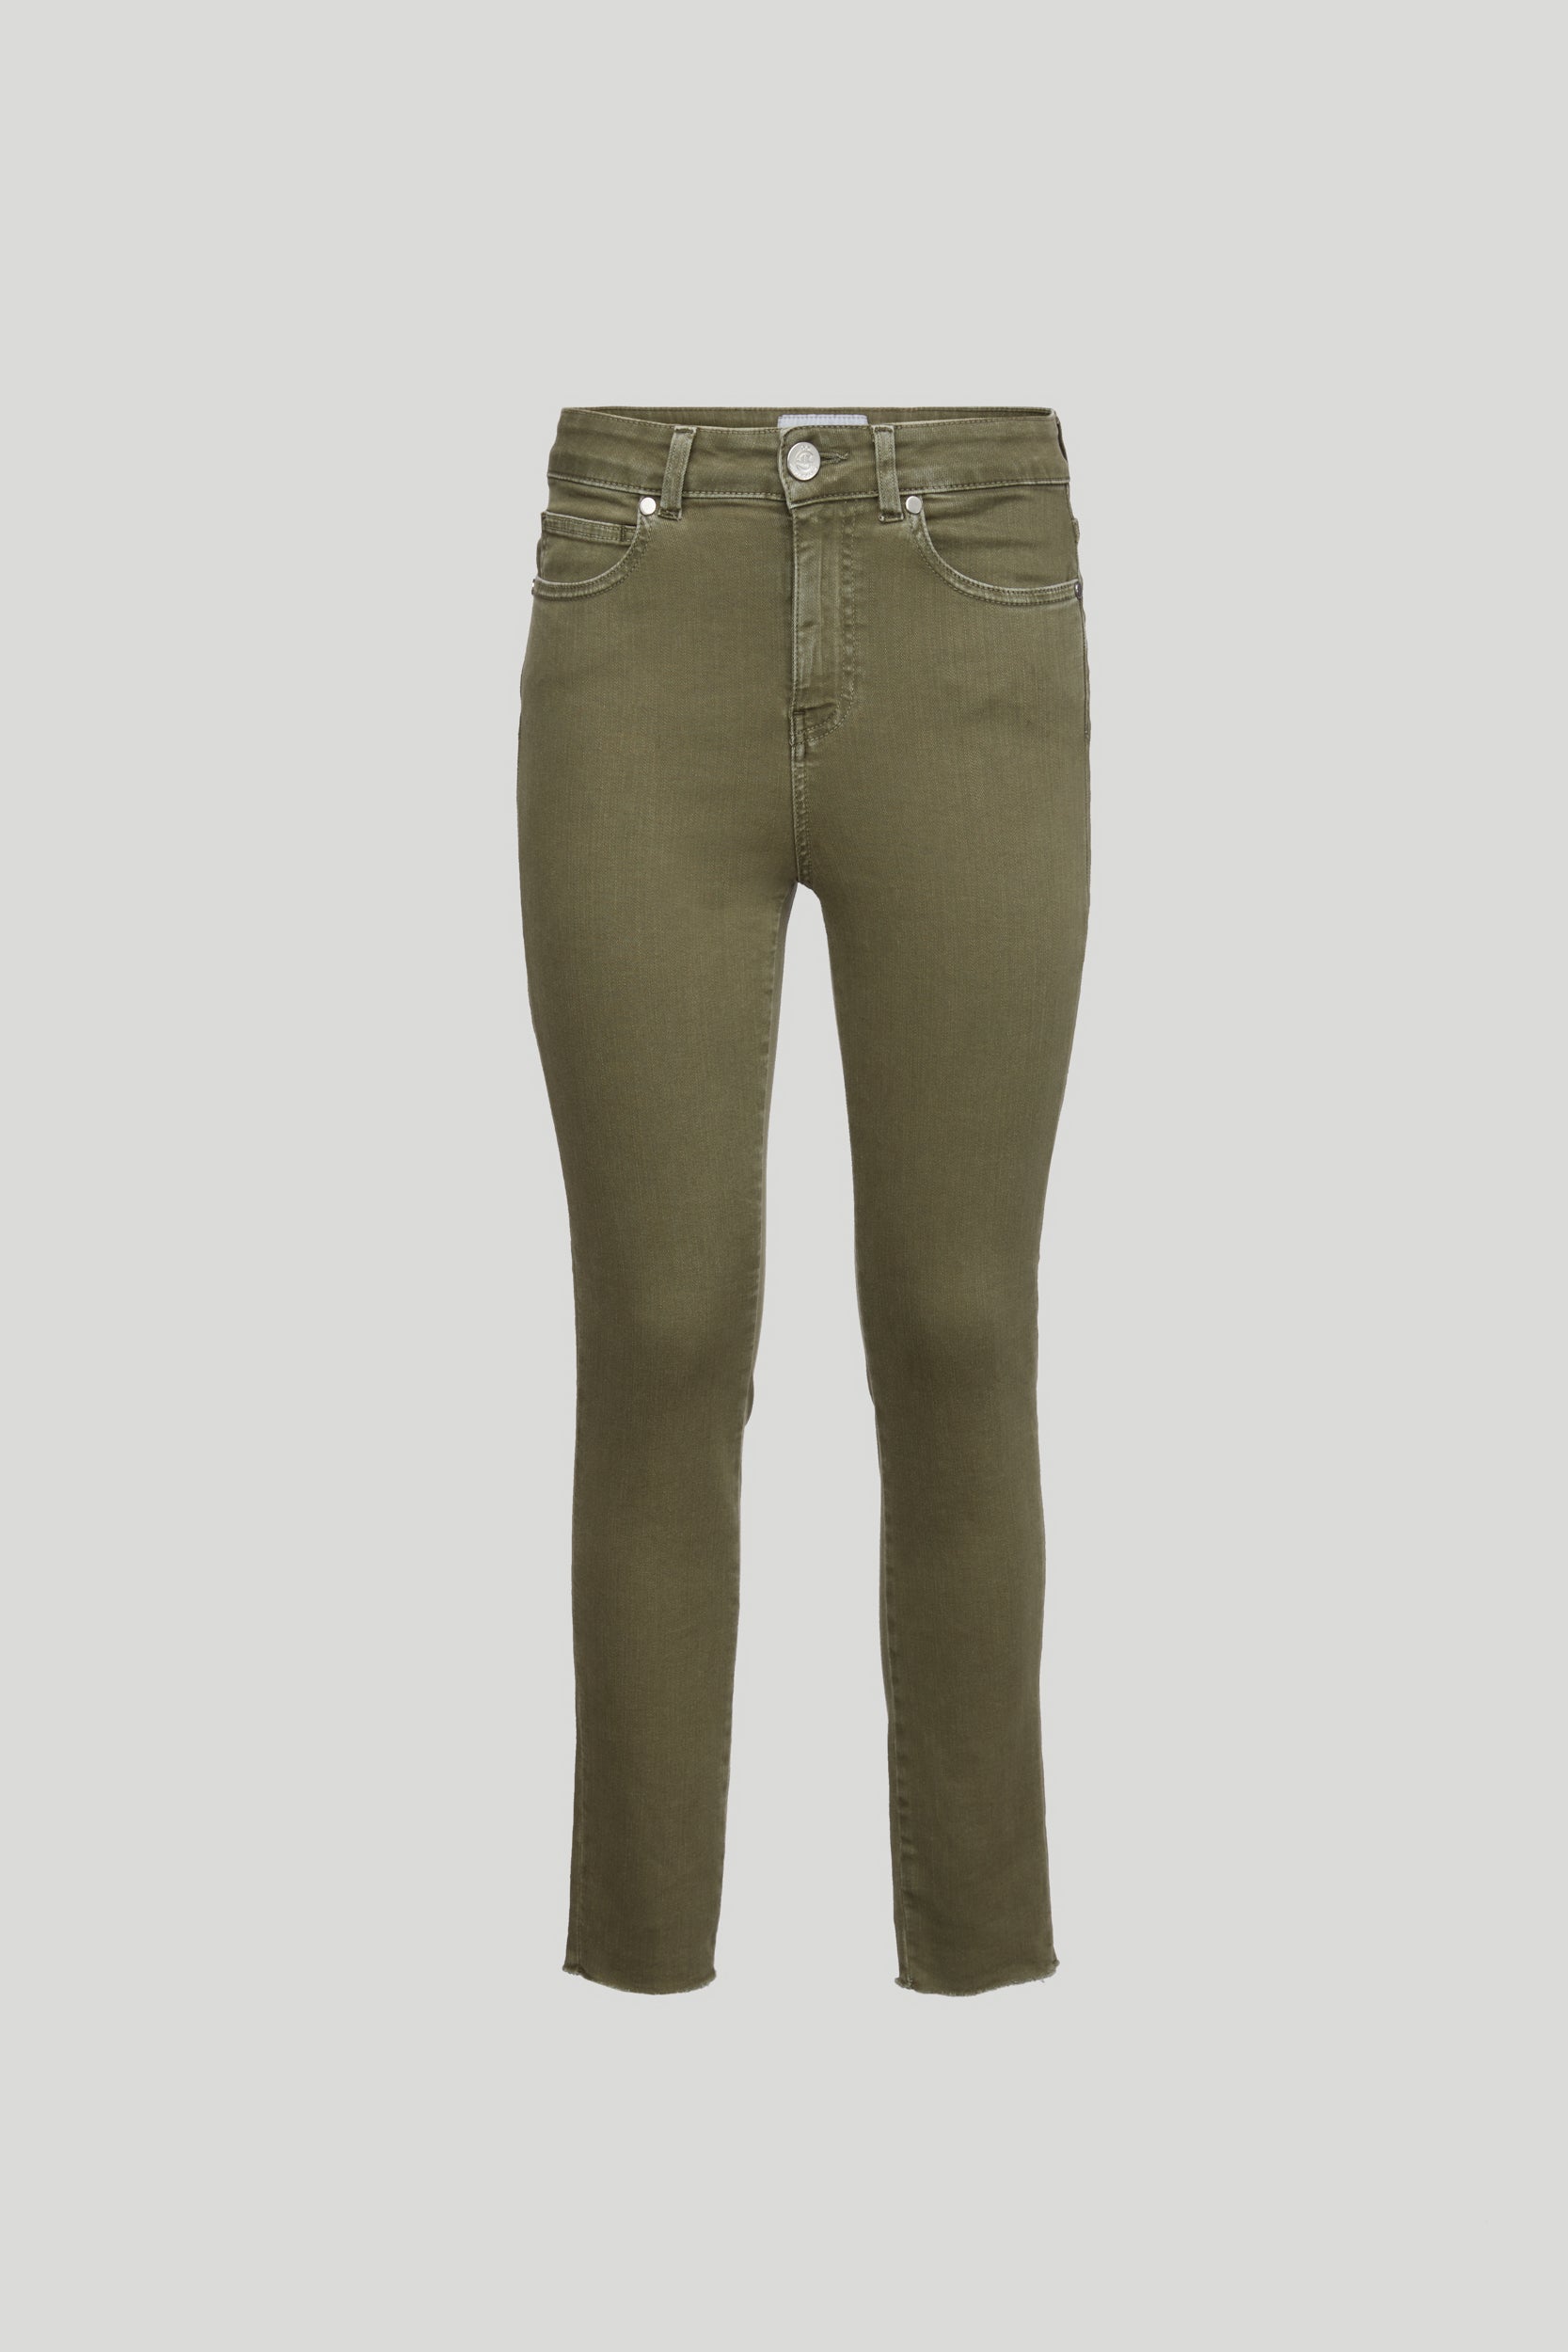 GAELLE Jeans Verde Military